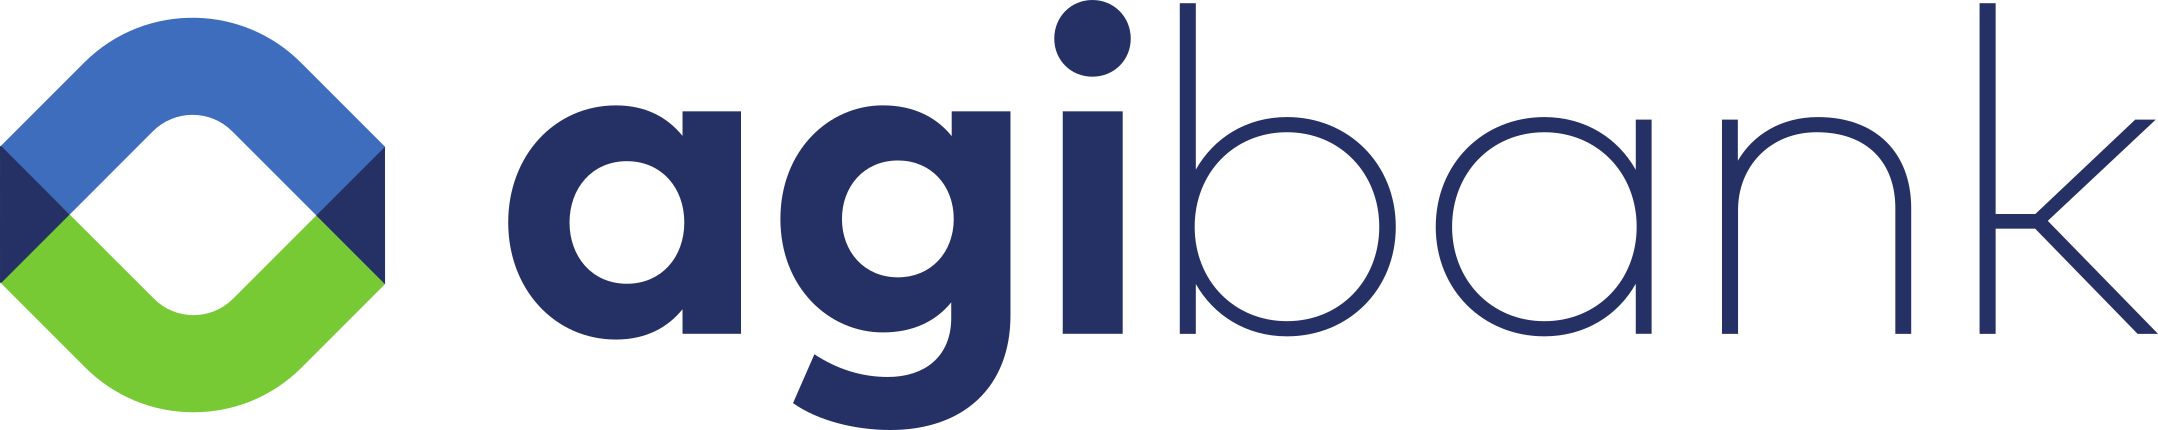 Agibank Logo - PNG e Vetor - Download de Logo